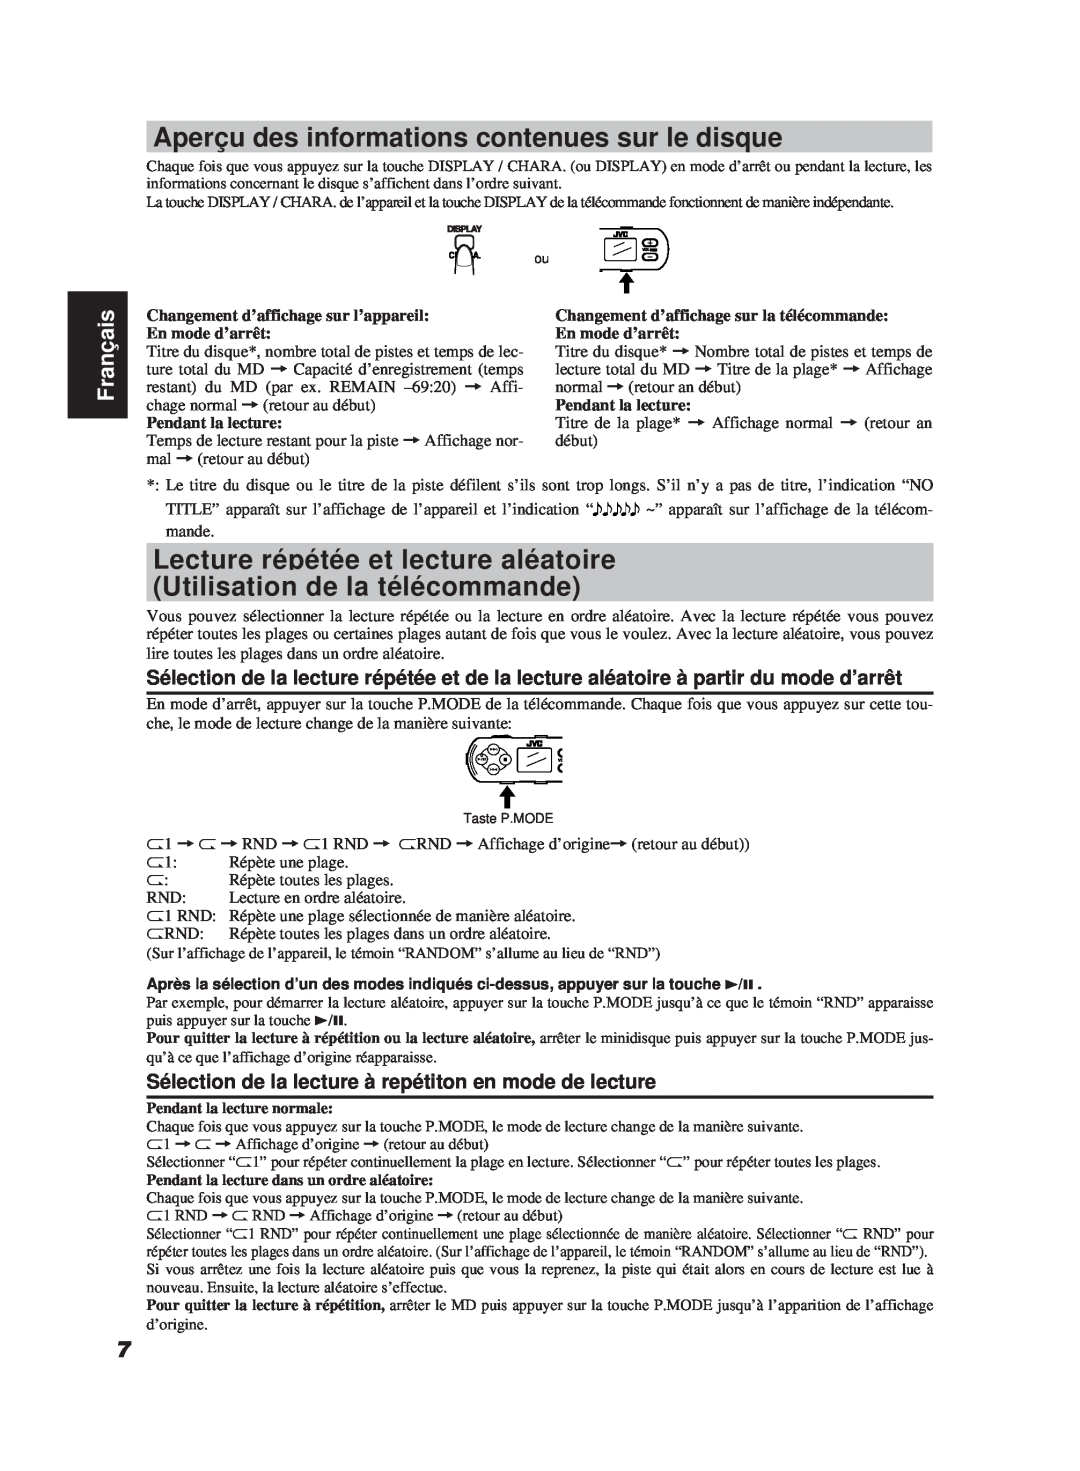 JVC XM-R700SL manual Aperçu des informations contenues sur le disque, Lecture répétée et lecture aléatoire, Français 